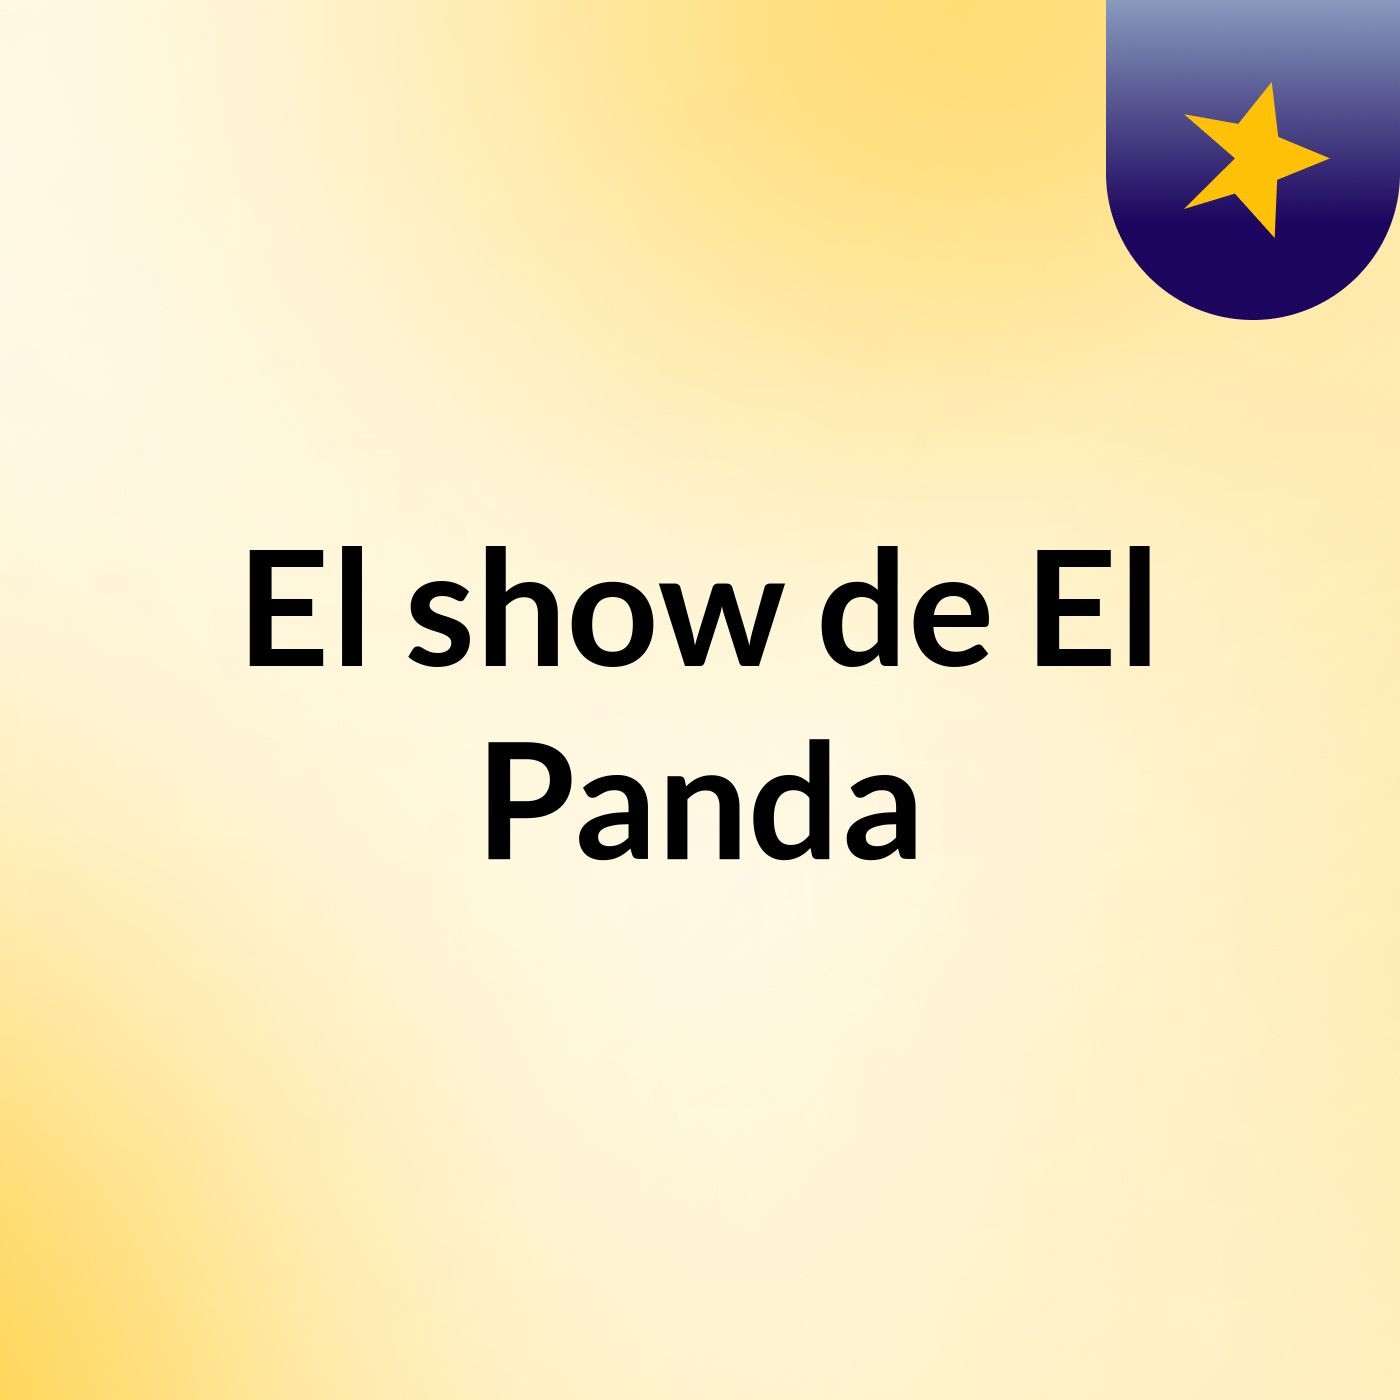 El show de El Panda